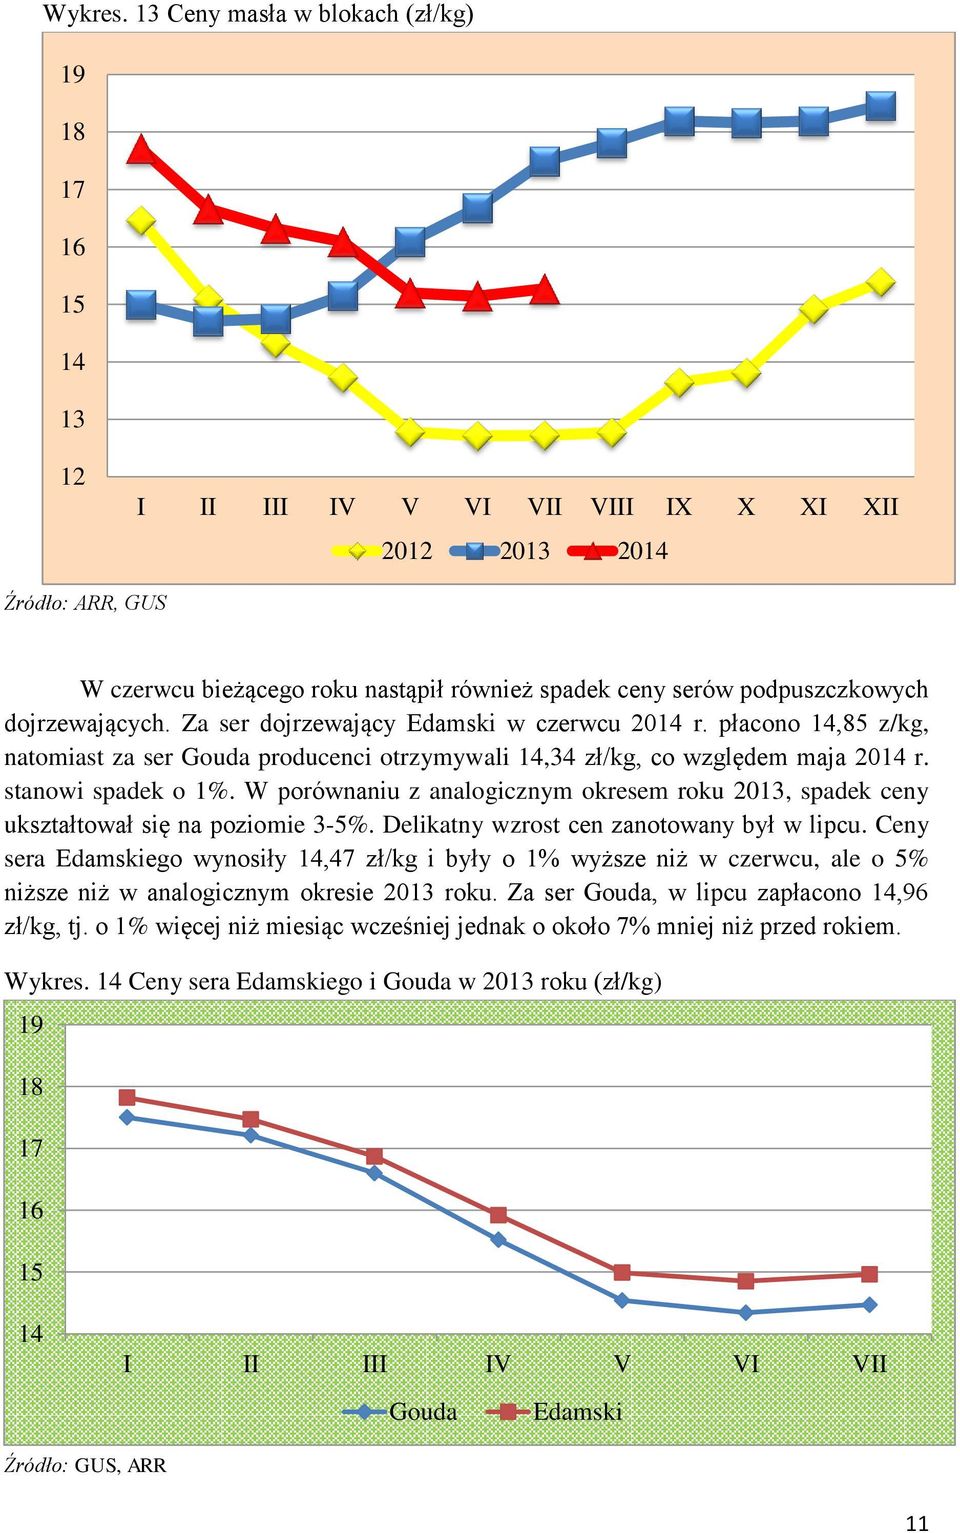 podpuszczkowych dojrzewających. Za ser dojrzewający Edamski w czerwcu 2014 r. płacono 14,85 z/kg, natomiast za ser Gouda producenci otrzymywali 14,34 zł/kg, co względem maja 2014 r.